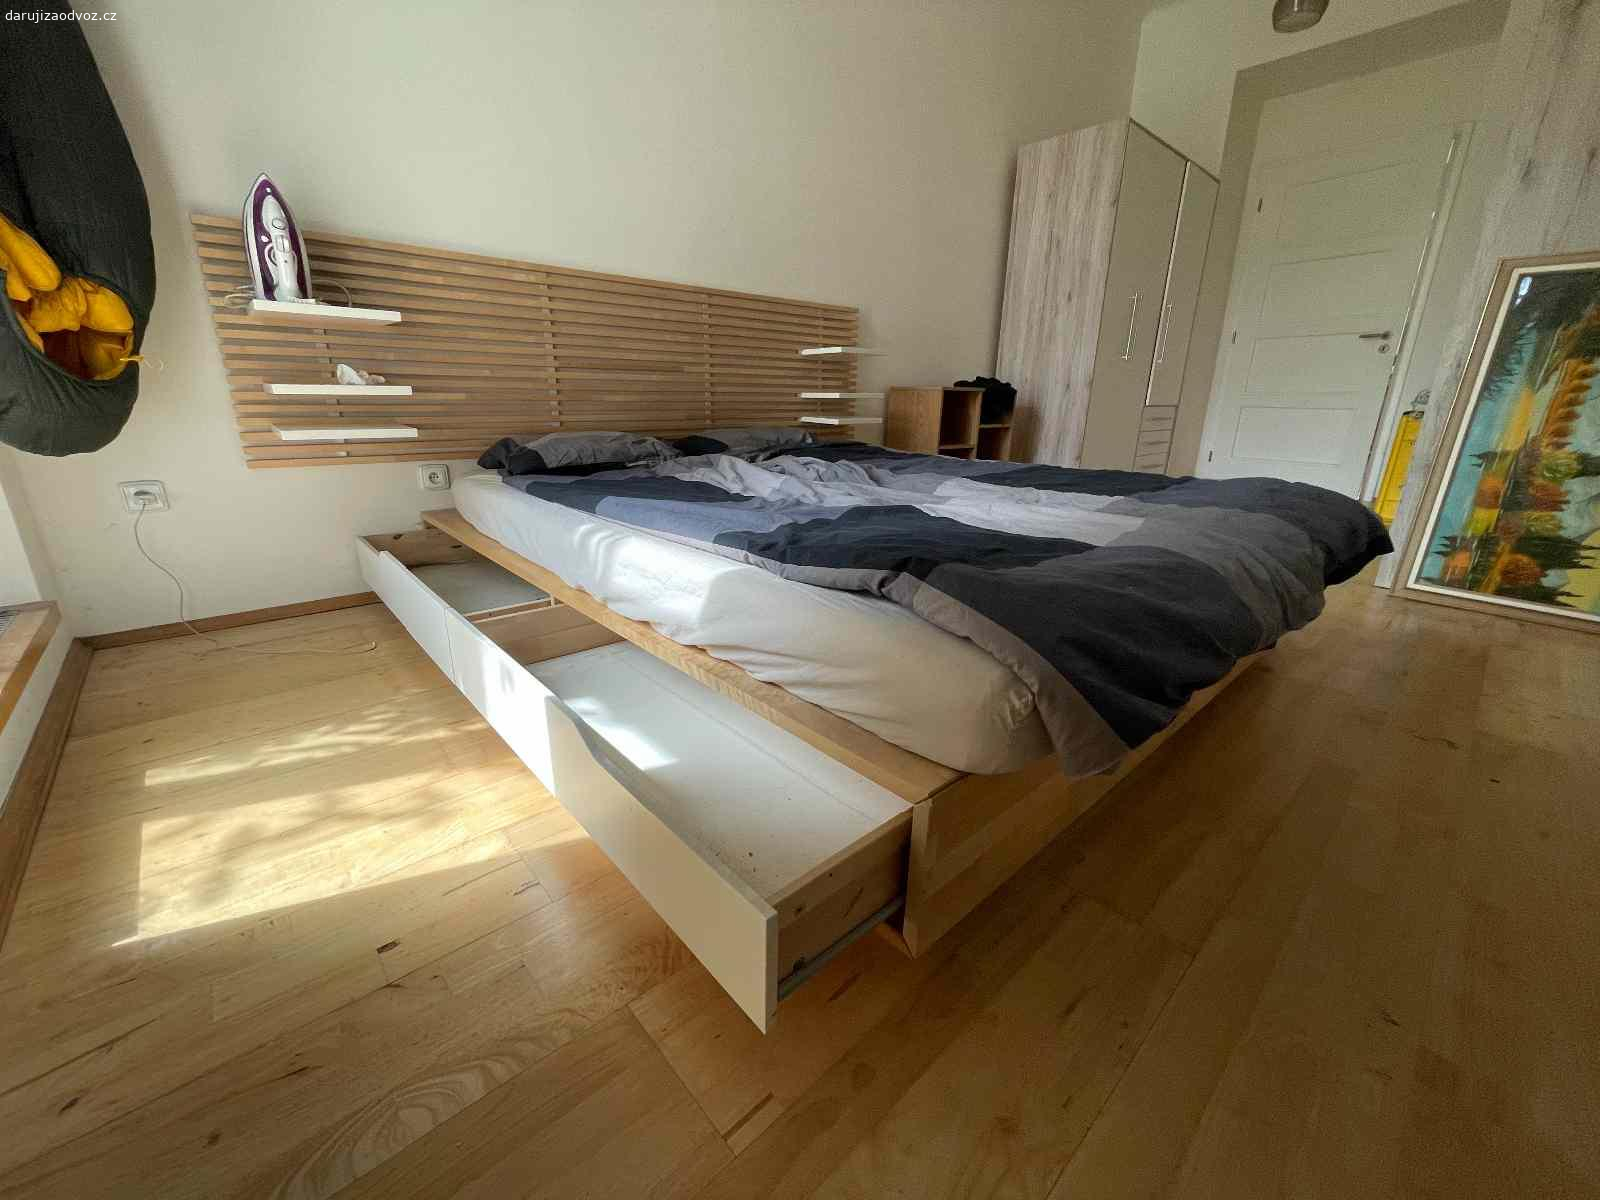 Postel dvojlůžková 160 cm šířka. Daruji postel + matraci (případně je k dispozici i ložní prádlo). Vše je ve výborném stavu, postel má i úložný prostor (šuplíky). K posteli patří i závěsné čelo s poličkami.